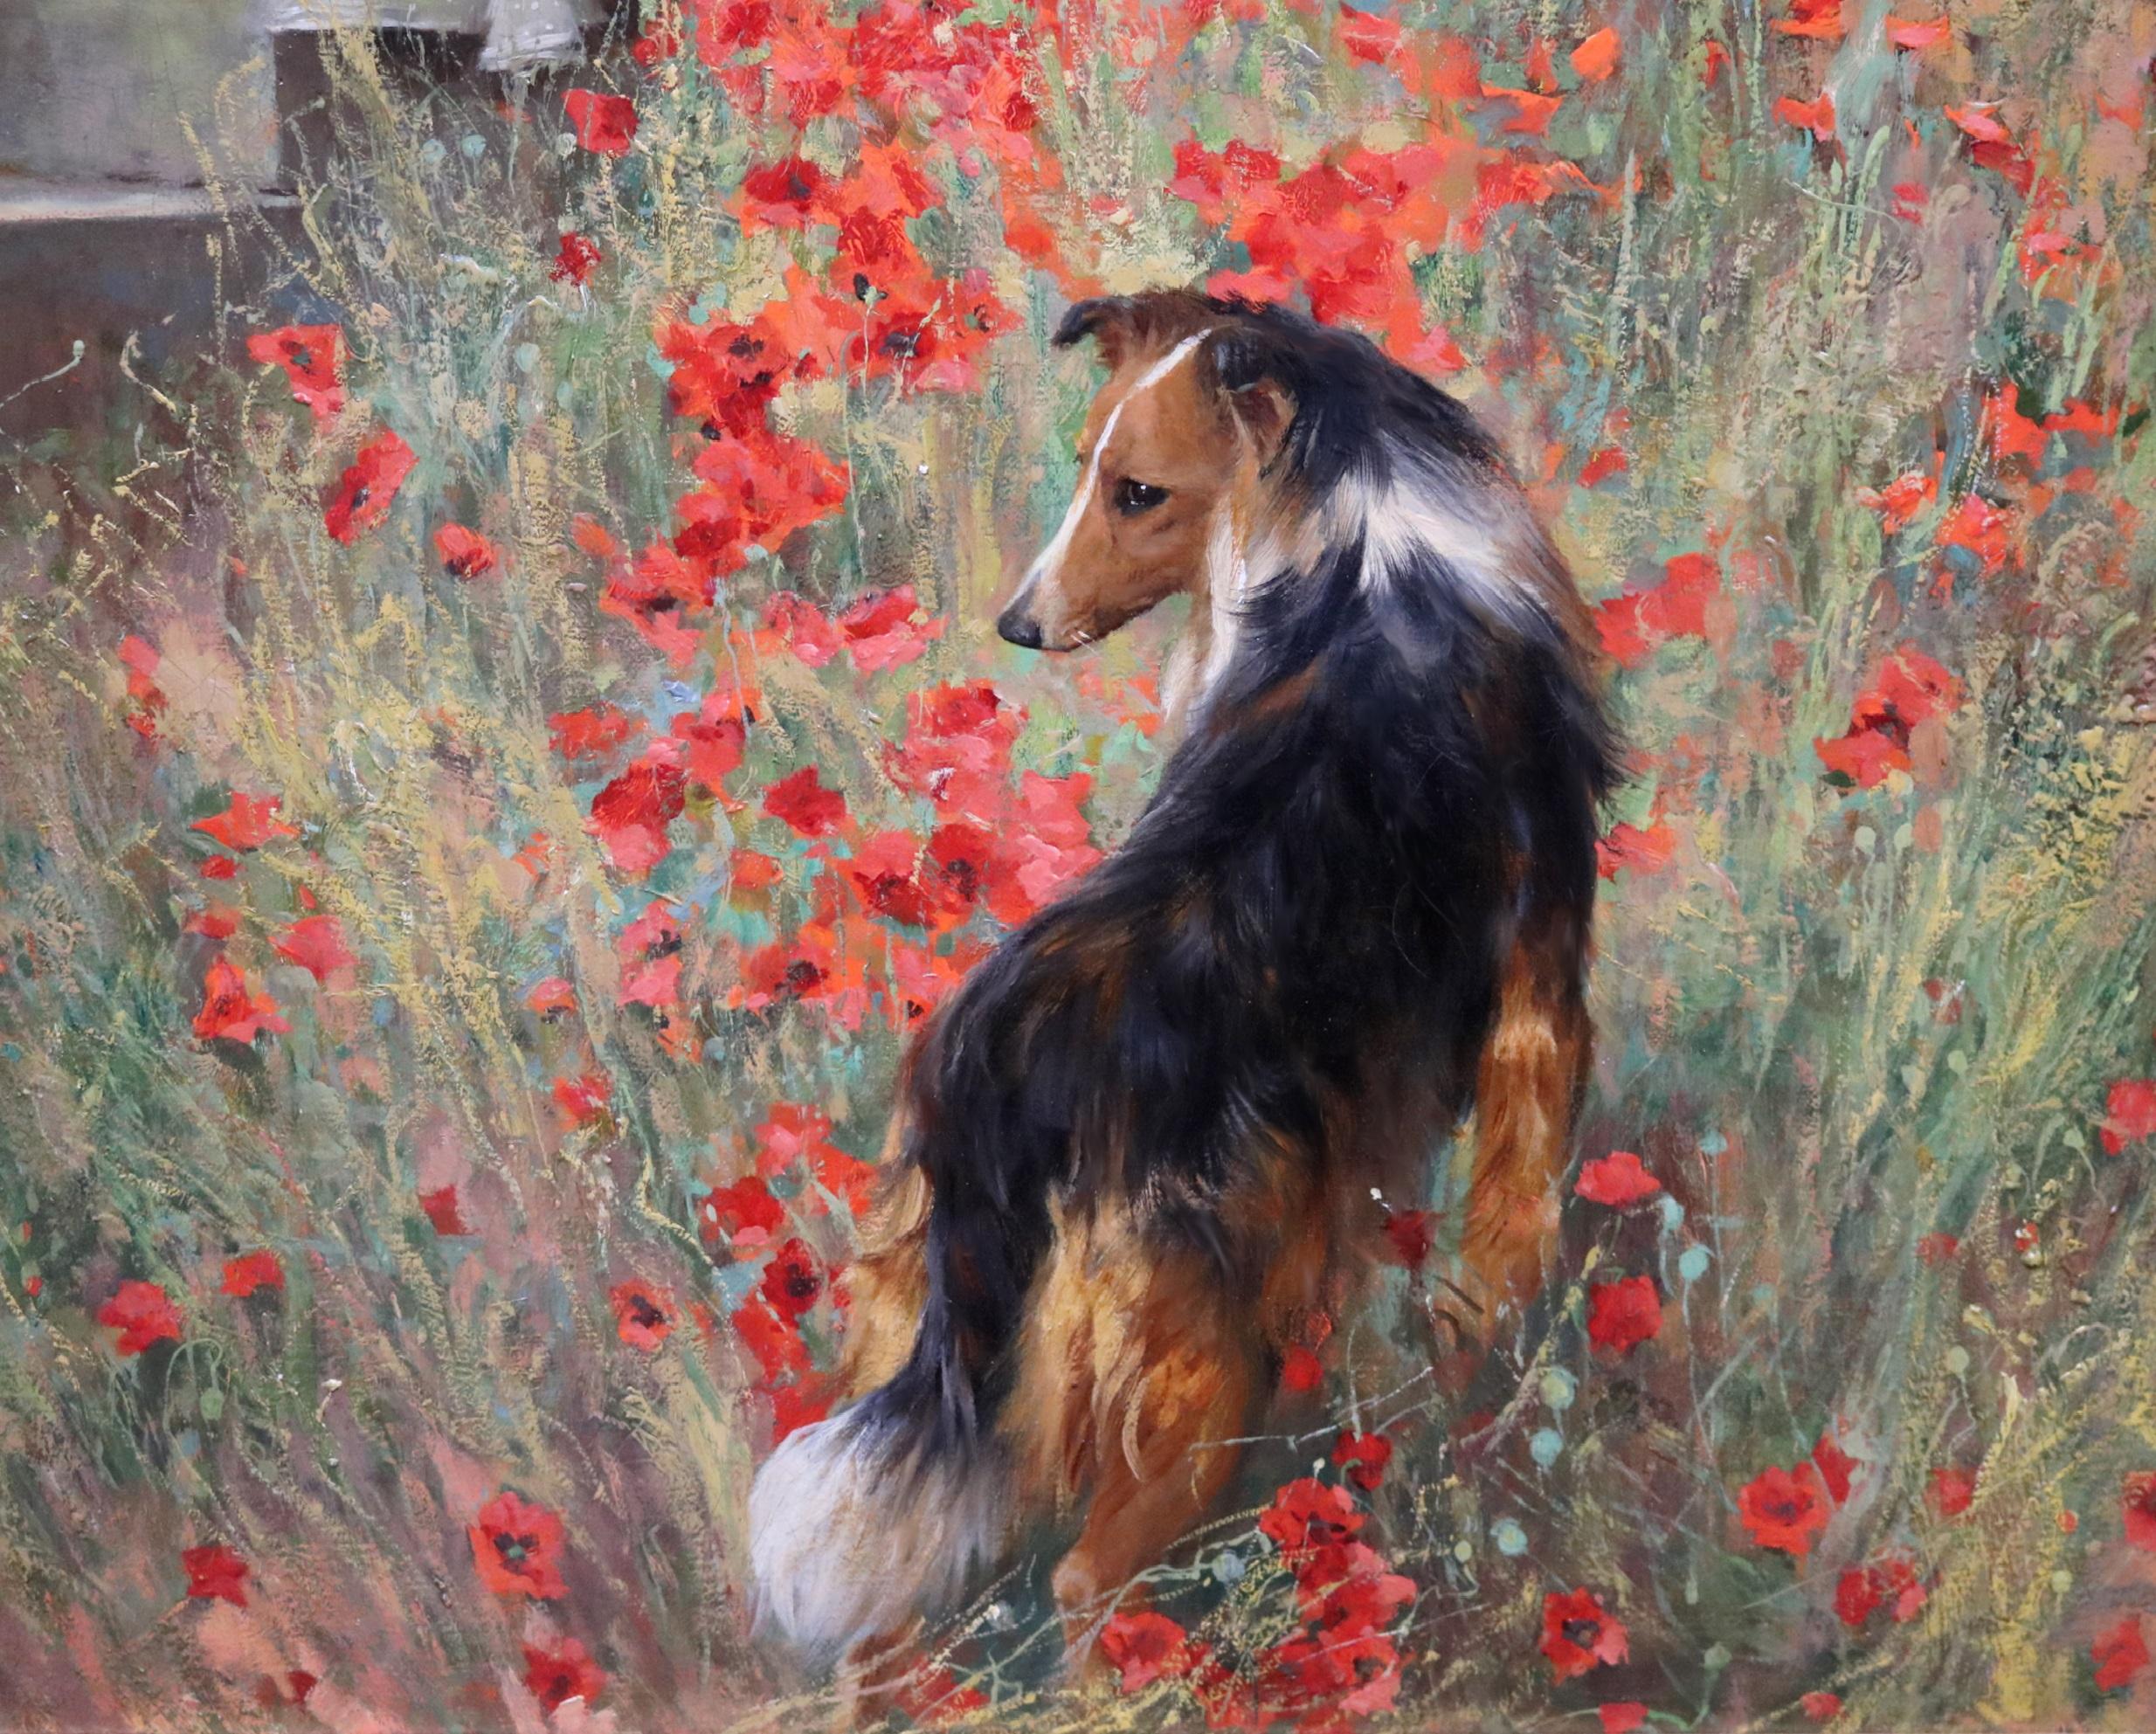 Vigilance Loyalty Devotion - Large Edwardian Oil Painting Society Beauty & Dogs 1